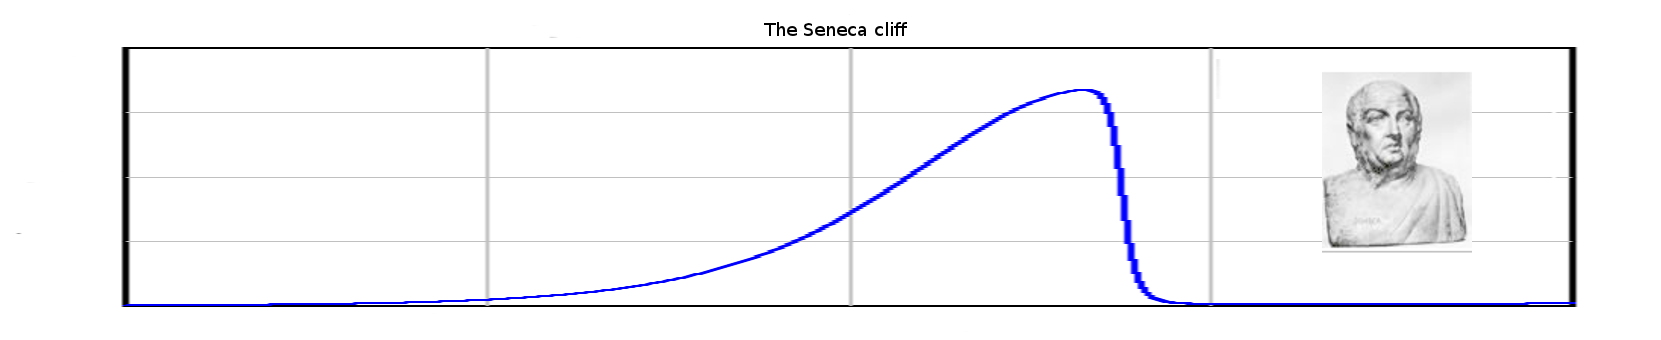 SenecaCliff2.png